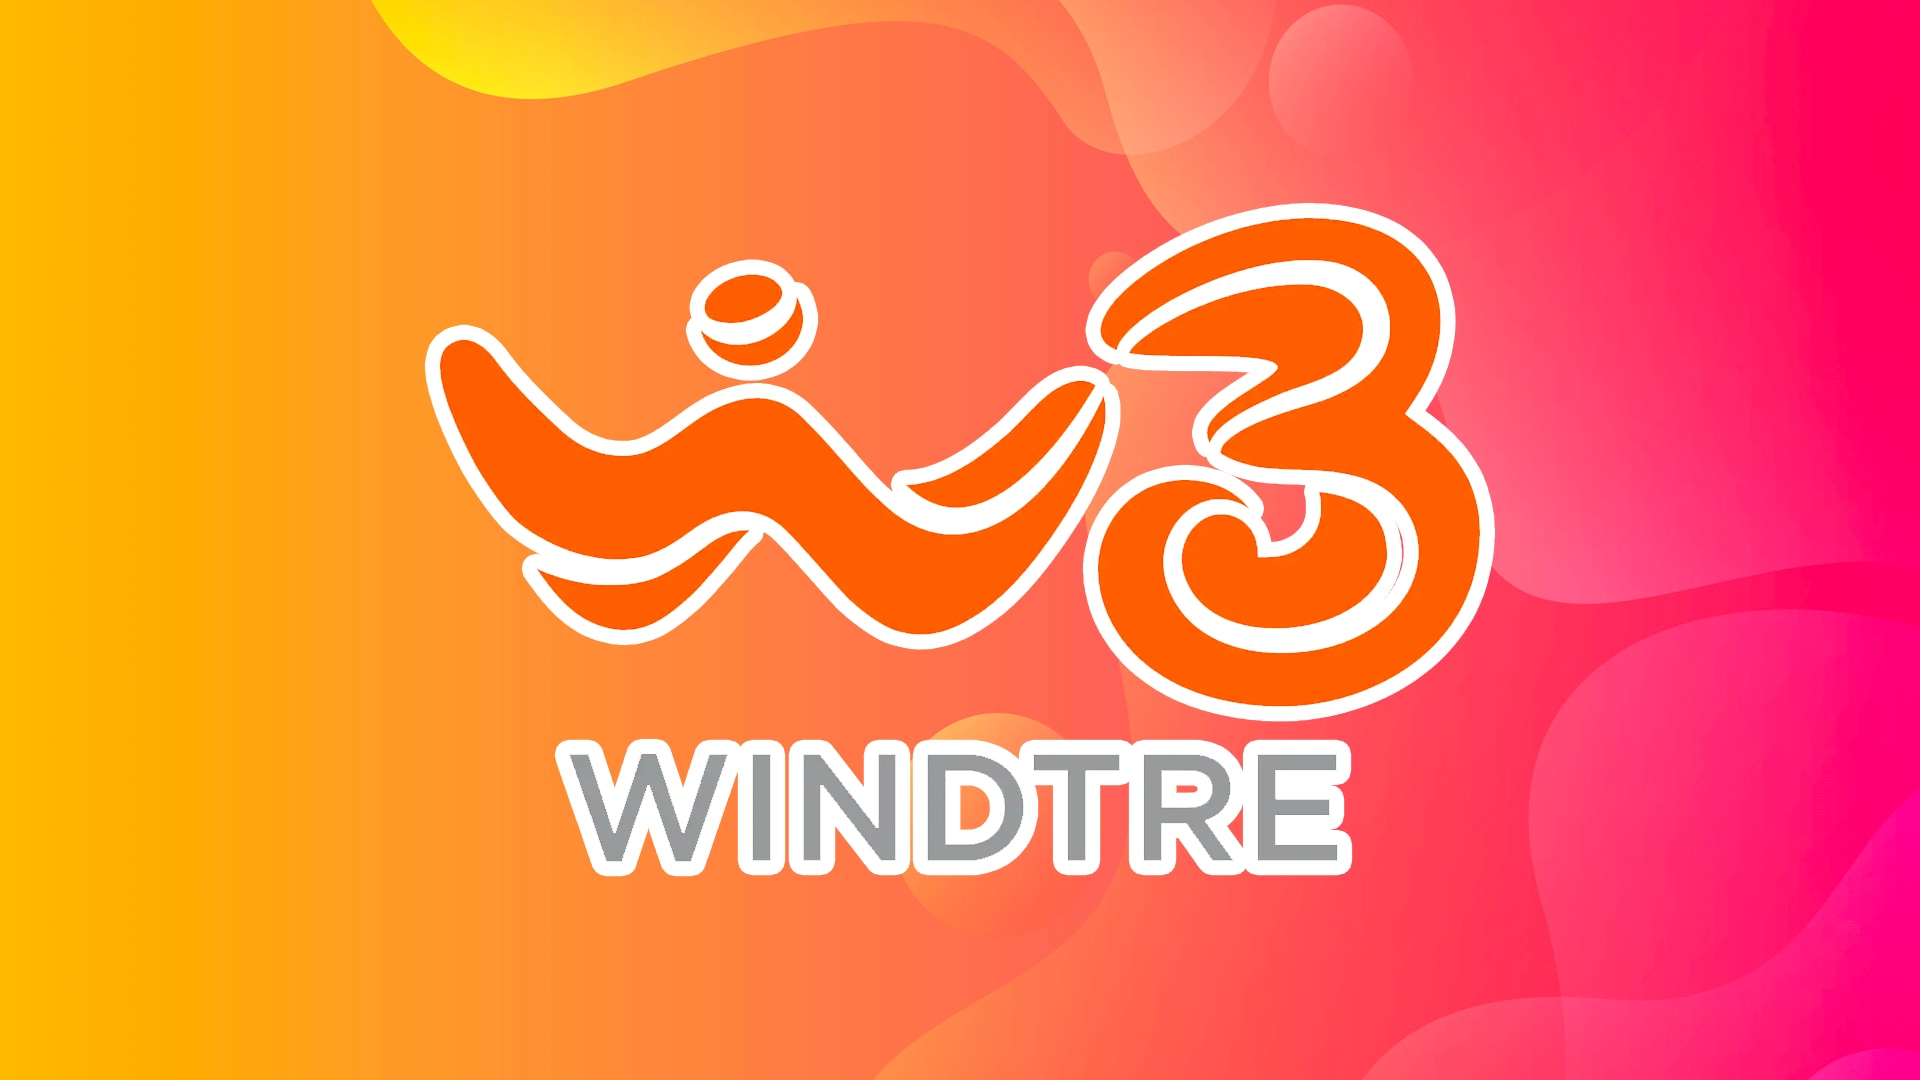 WindTre tenta i vecchi clienti dei suoi brand componenti Wind e 3 ...